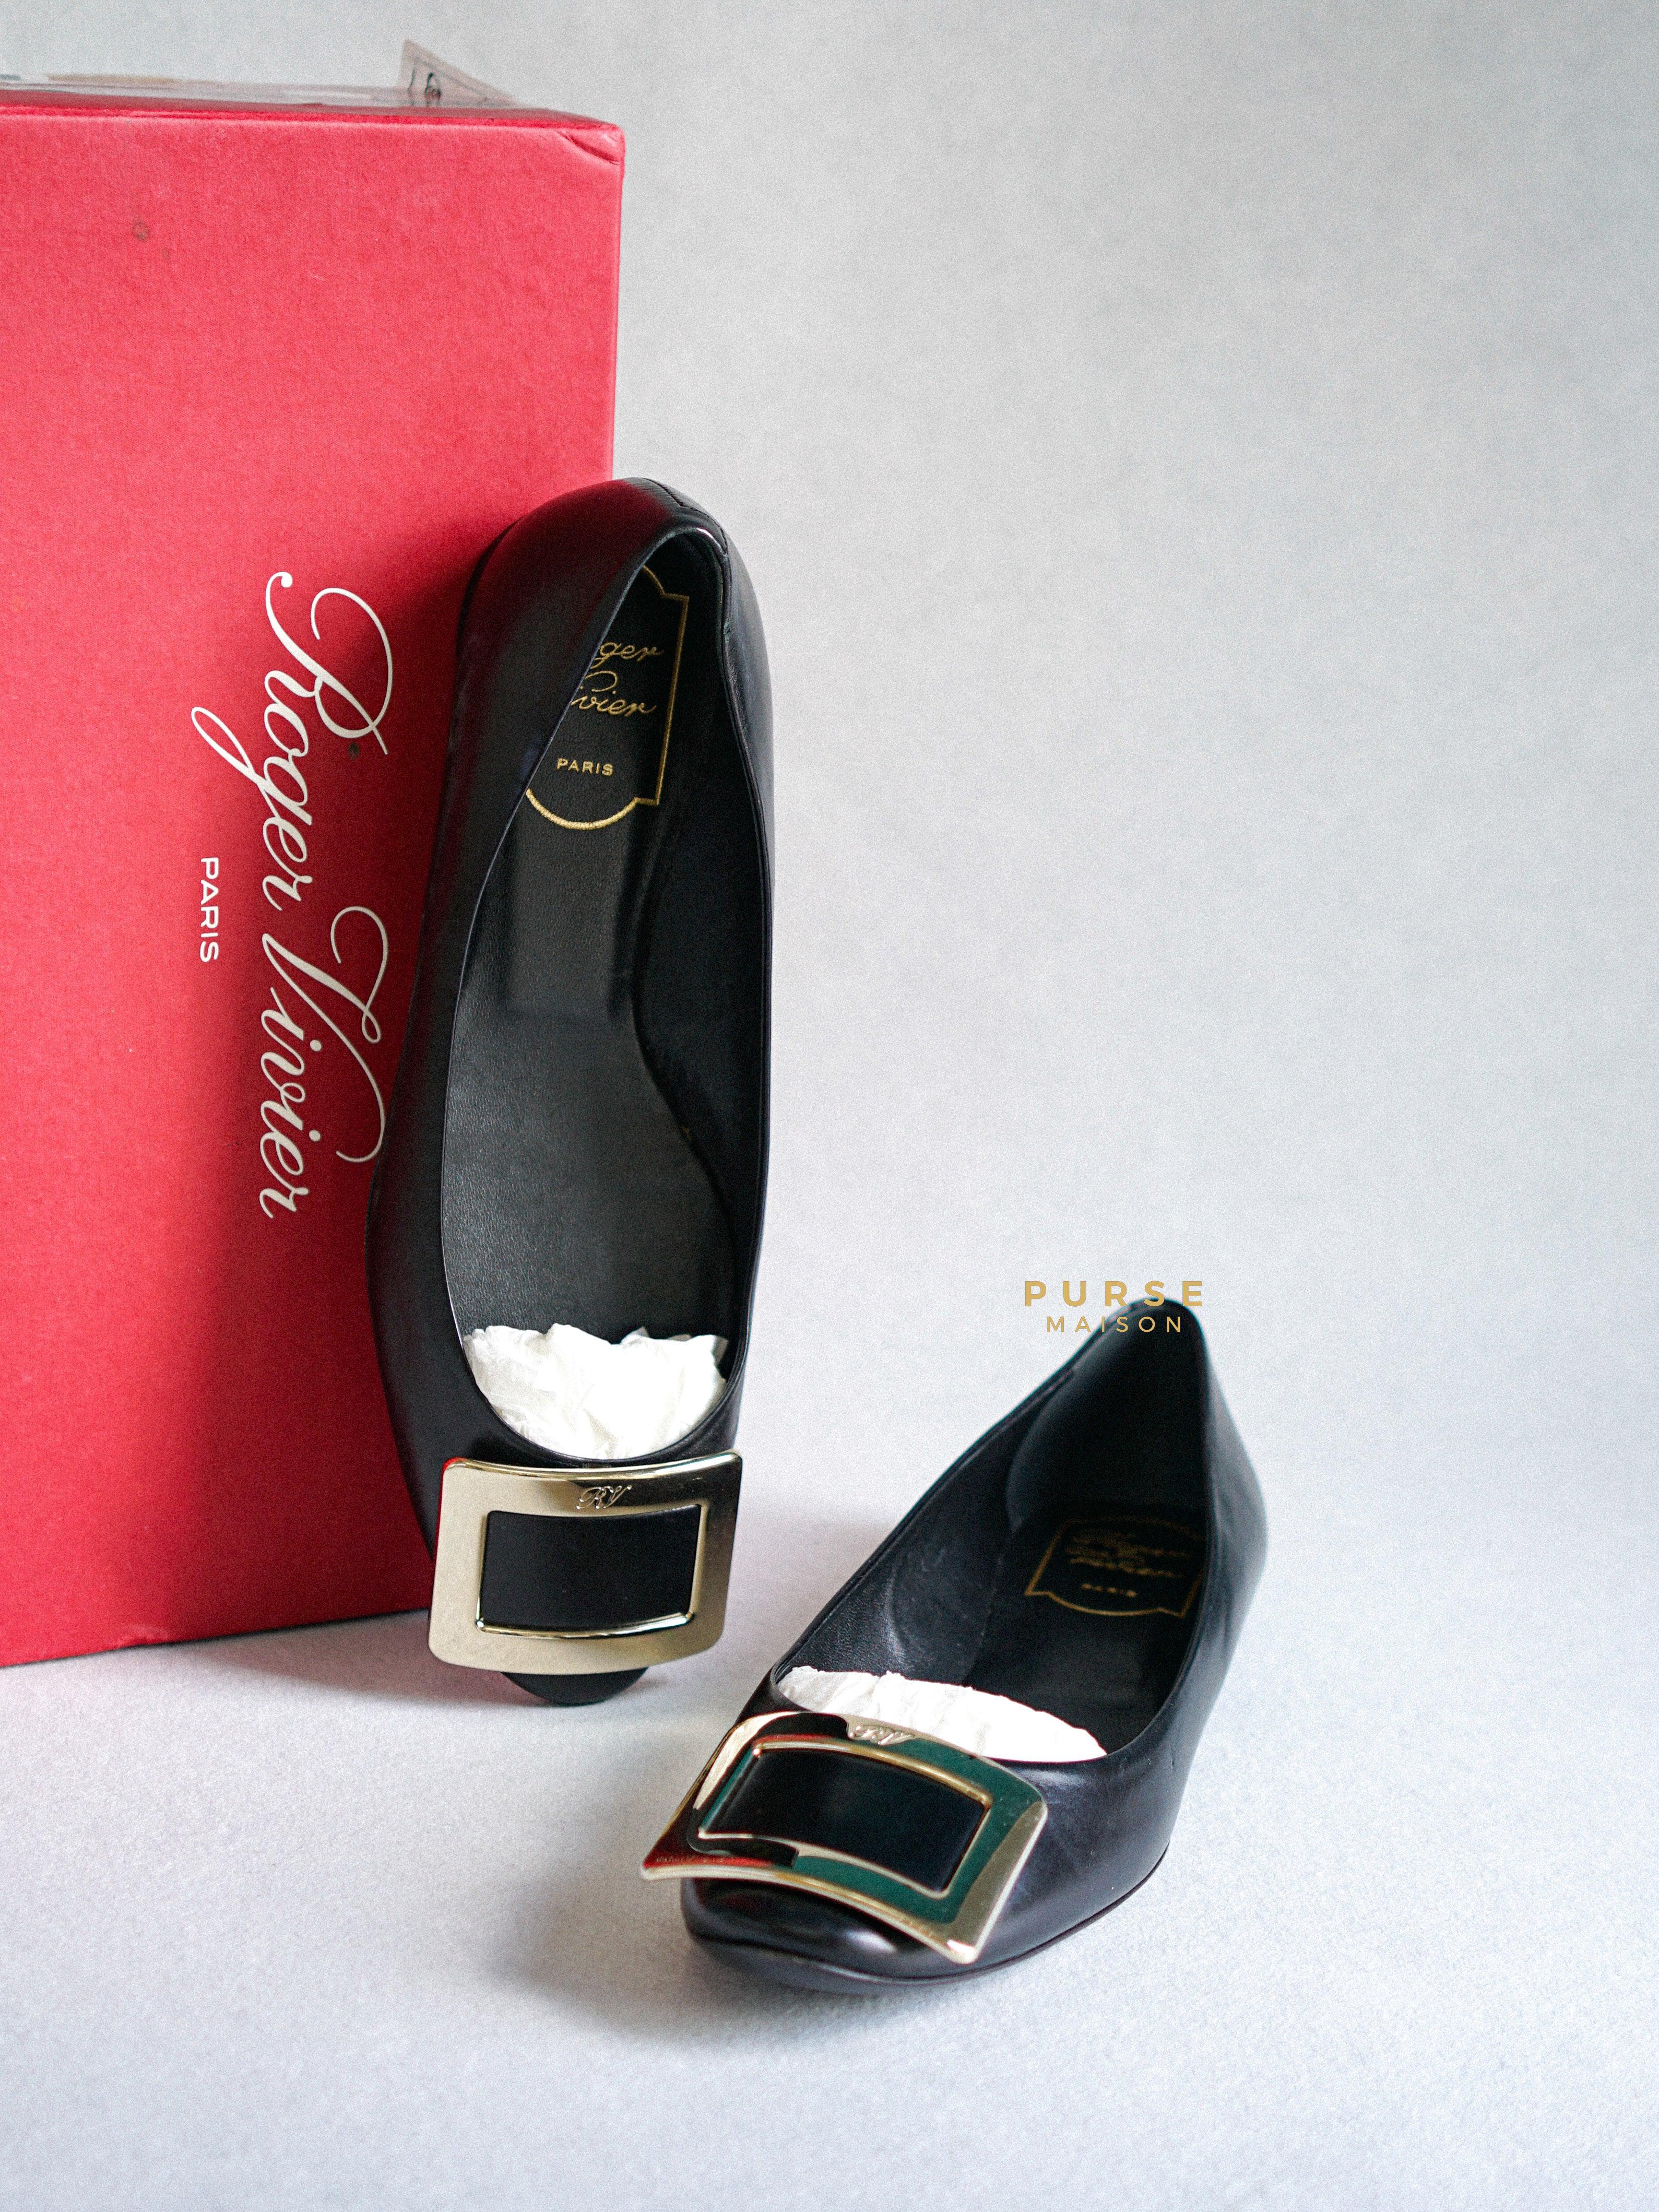 Roger Vivier Black Ballerine Belle Vivier Shoes Size 36.5 (24cm) | Purse Maison Luxury Bags Shop